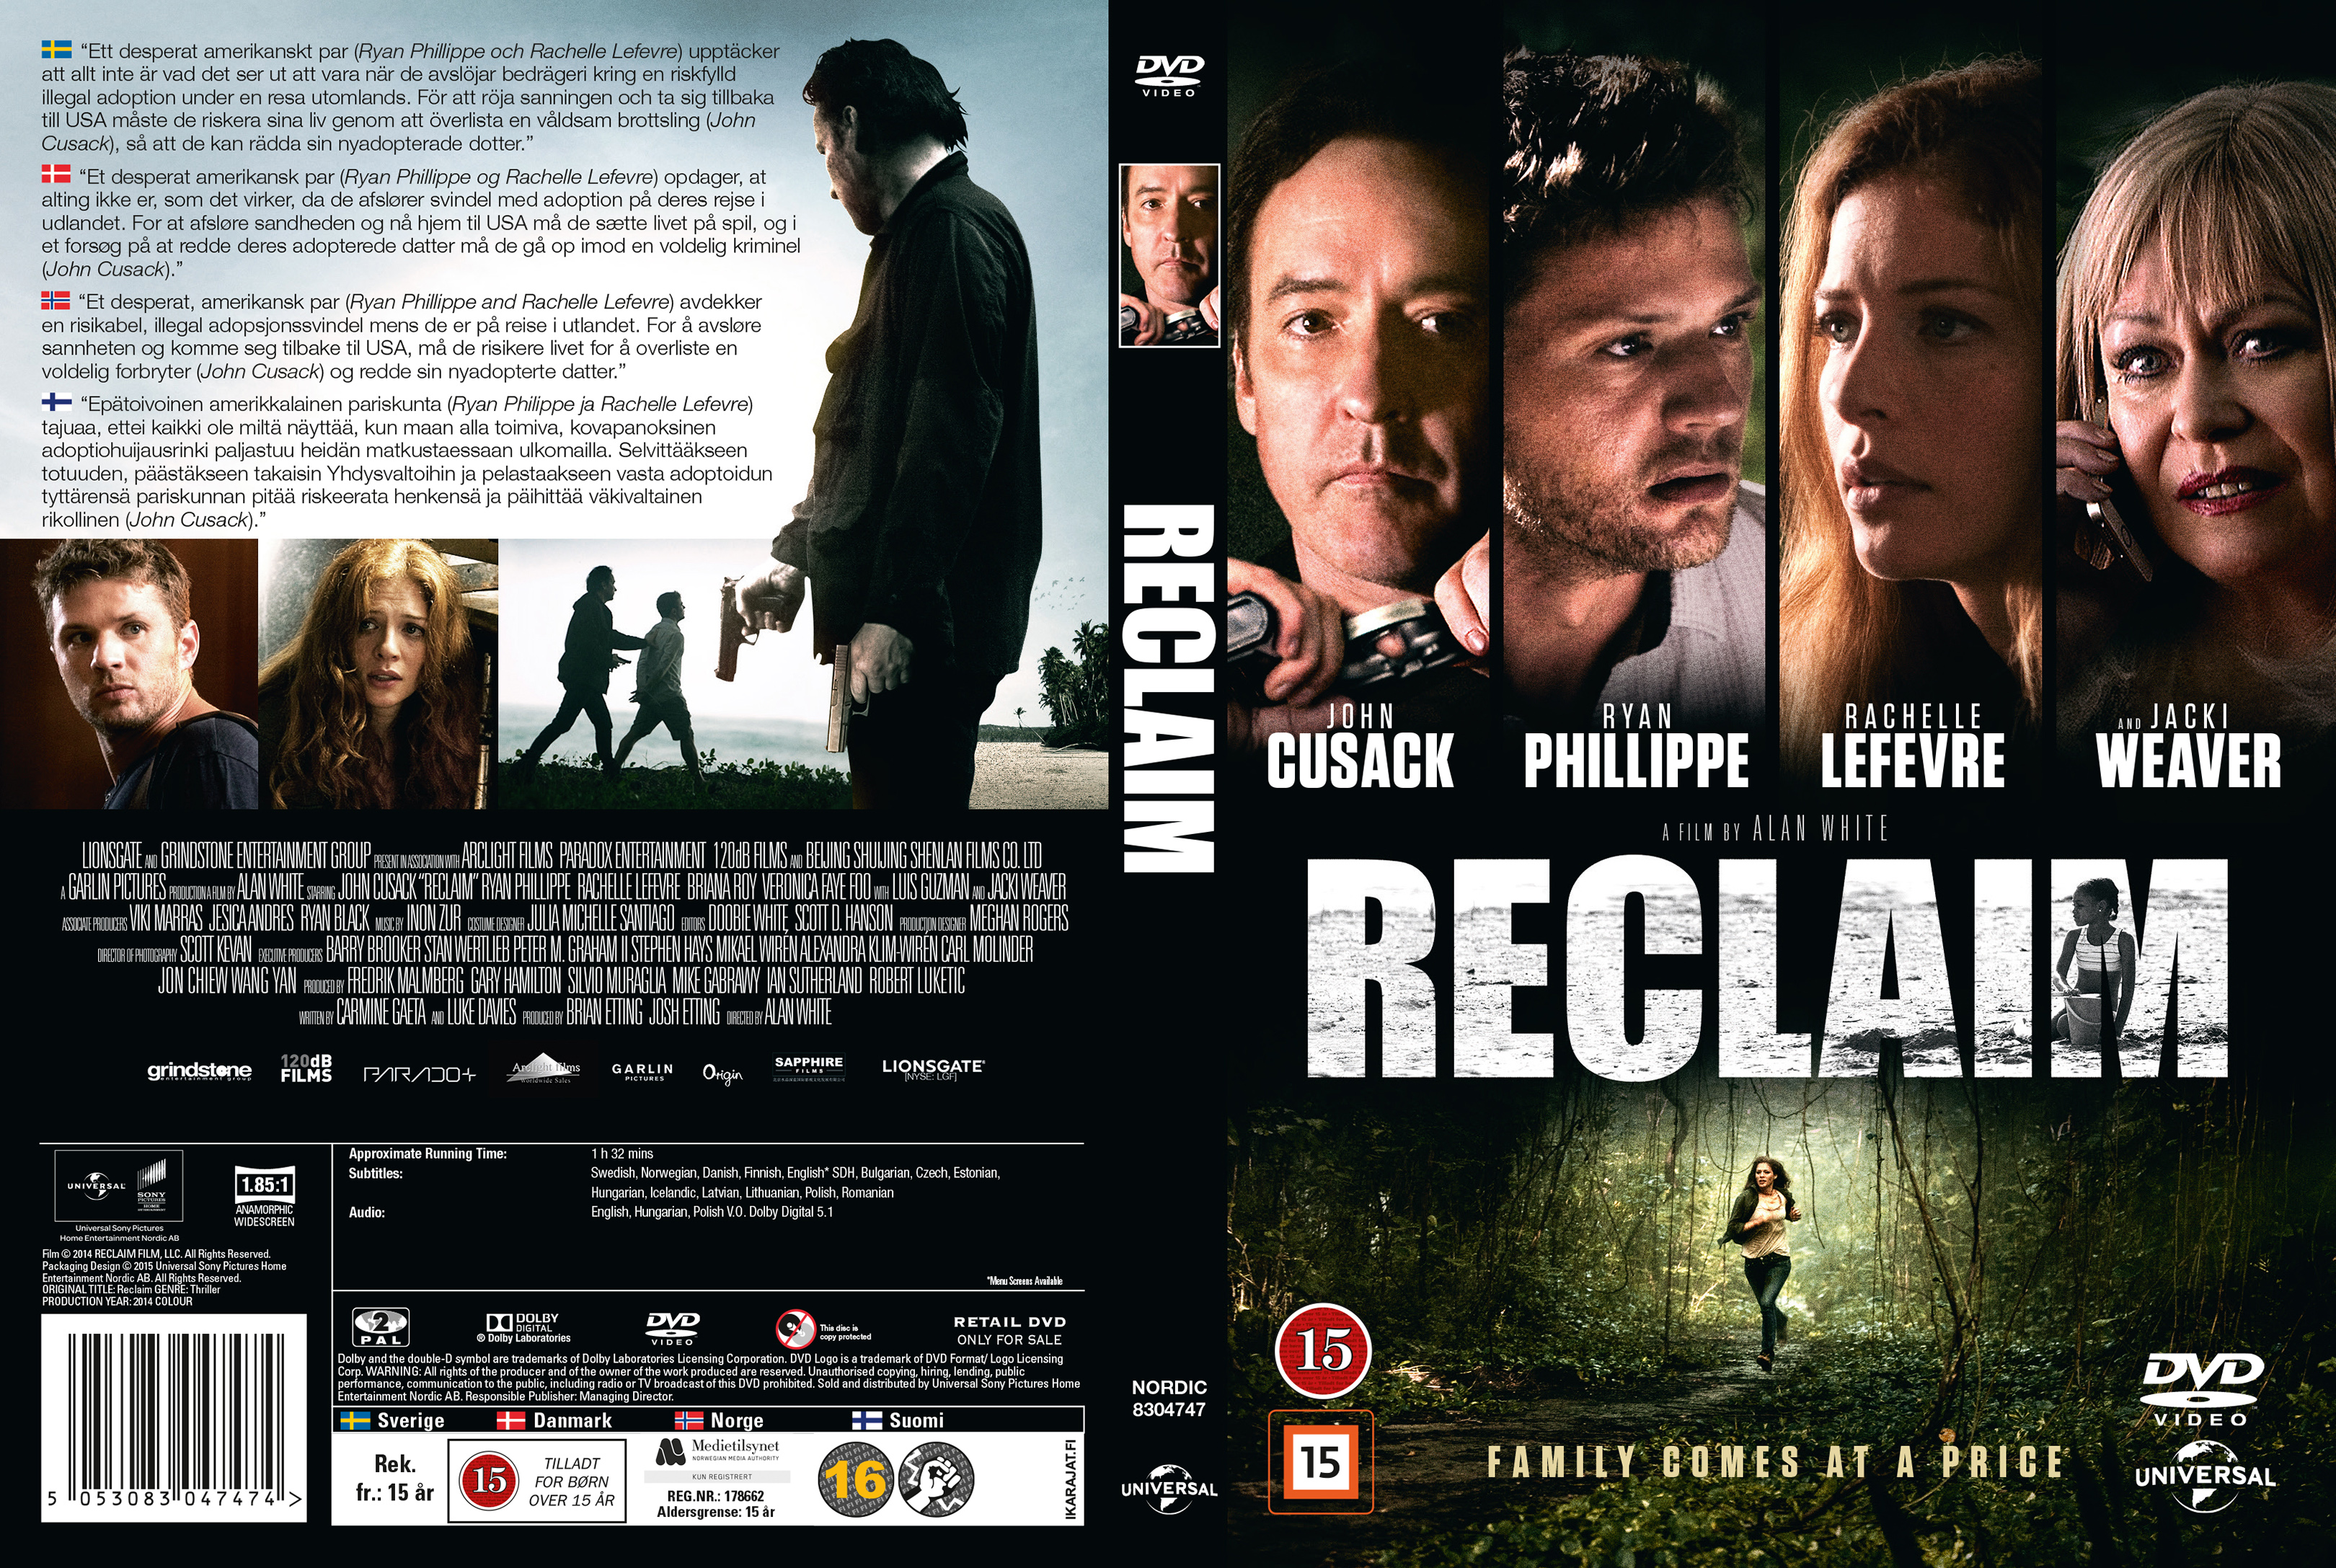  Reclaim [DVD] : Movies & TV